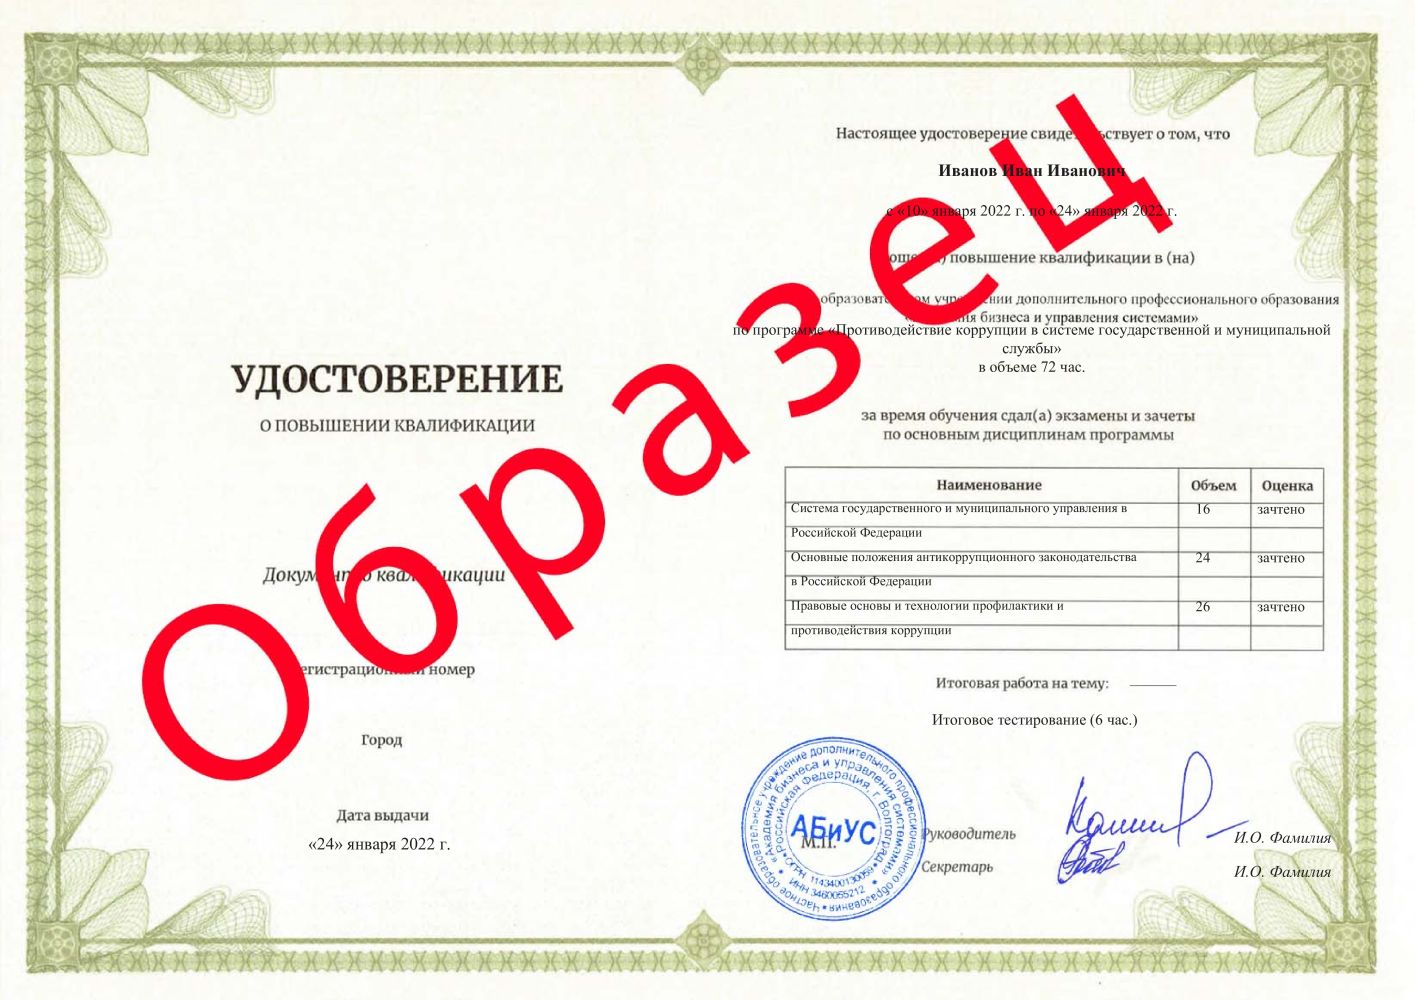 Удостоверение Противодействие коррупции в системе государственной и муниципальной службы 72 часа 3875 руб.